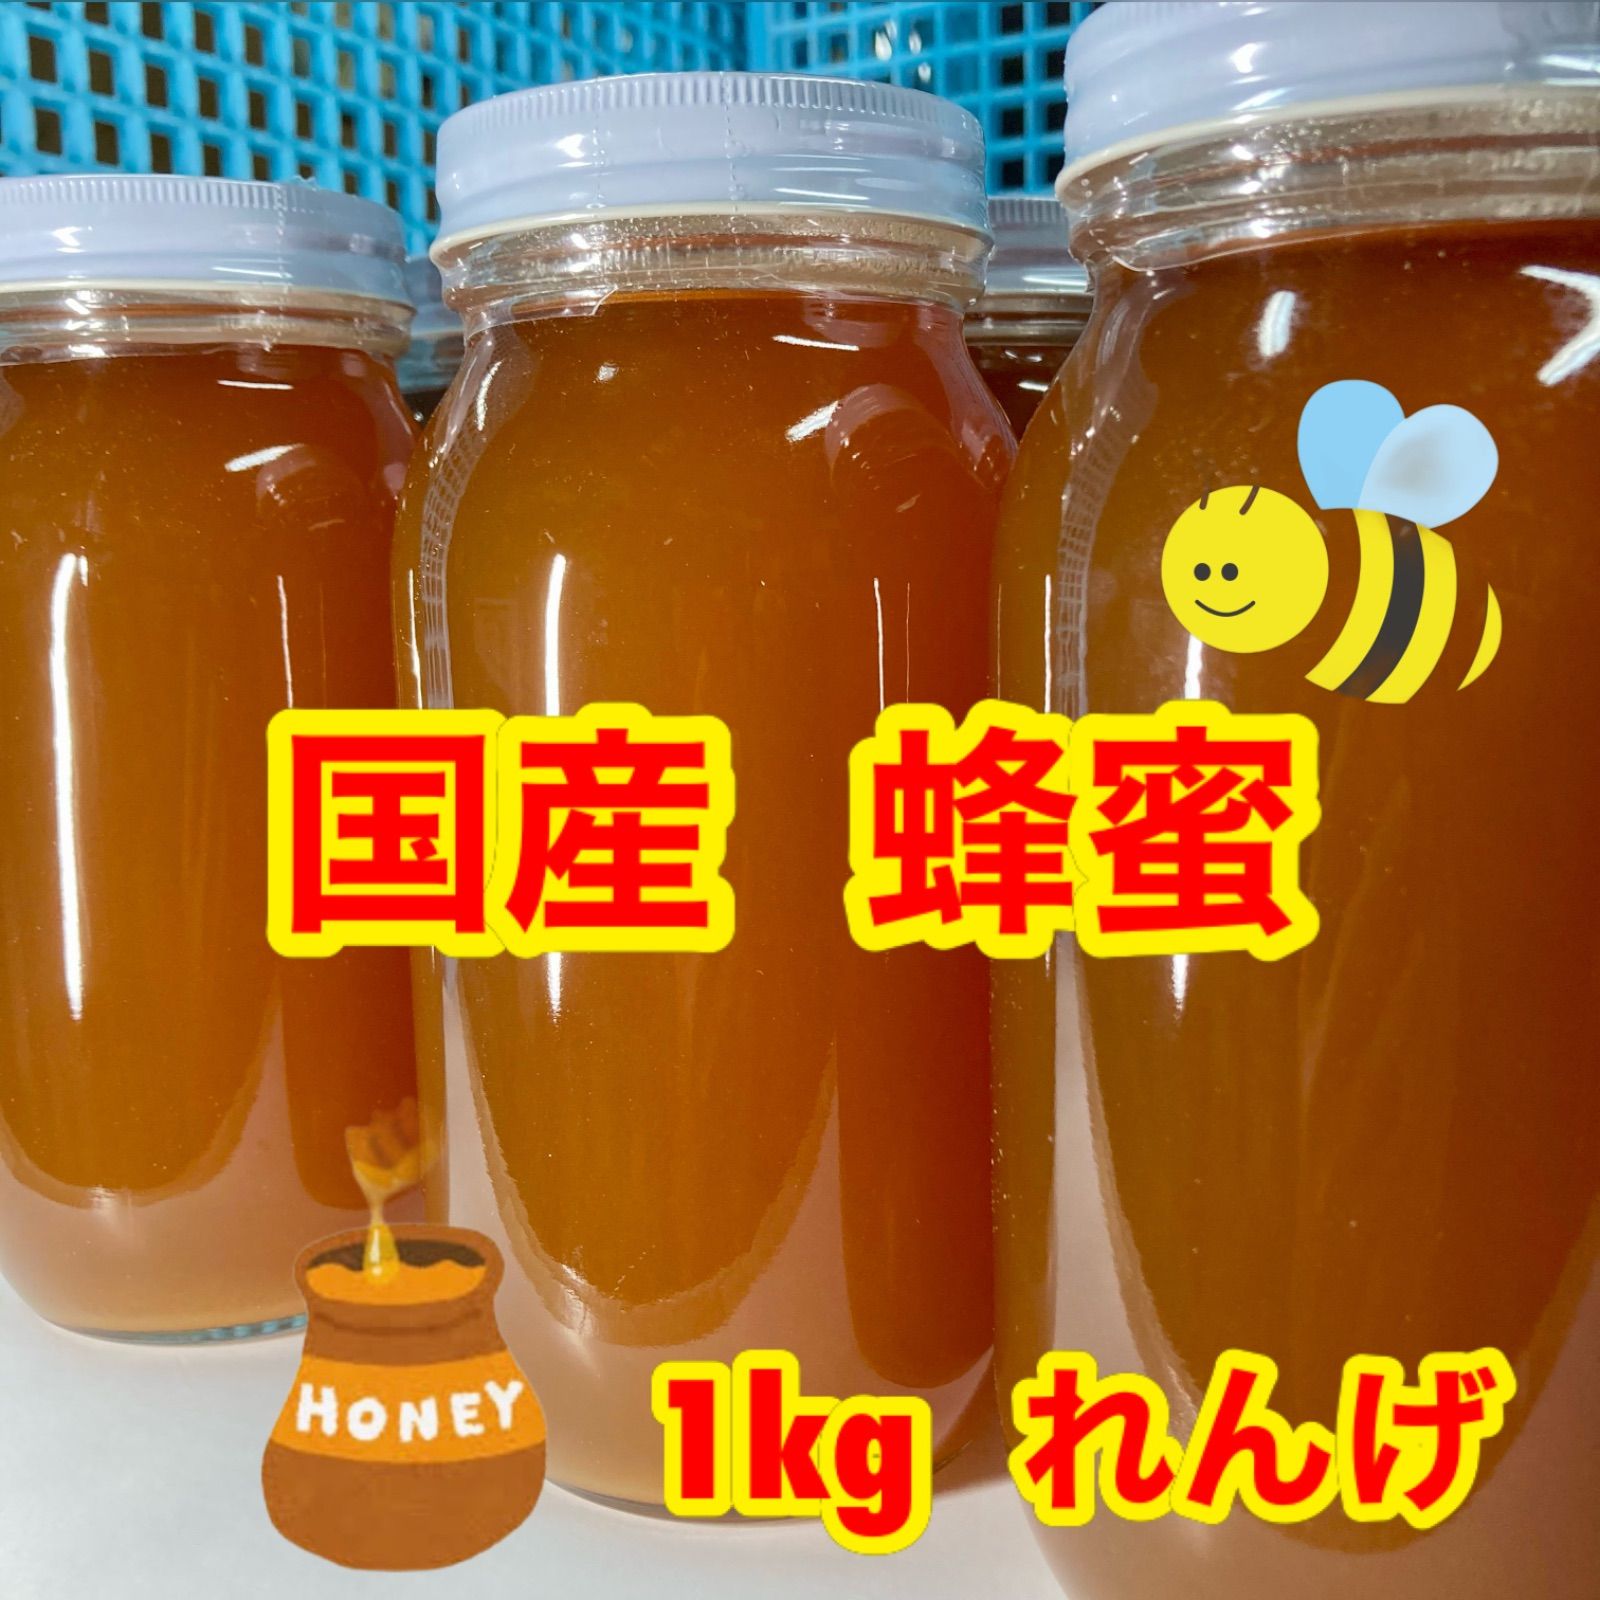 純国産 生蜂蜜100％ れんげ 黄金蜂蜜 大分県玖珠郡原産<非加熱>